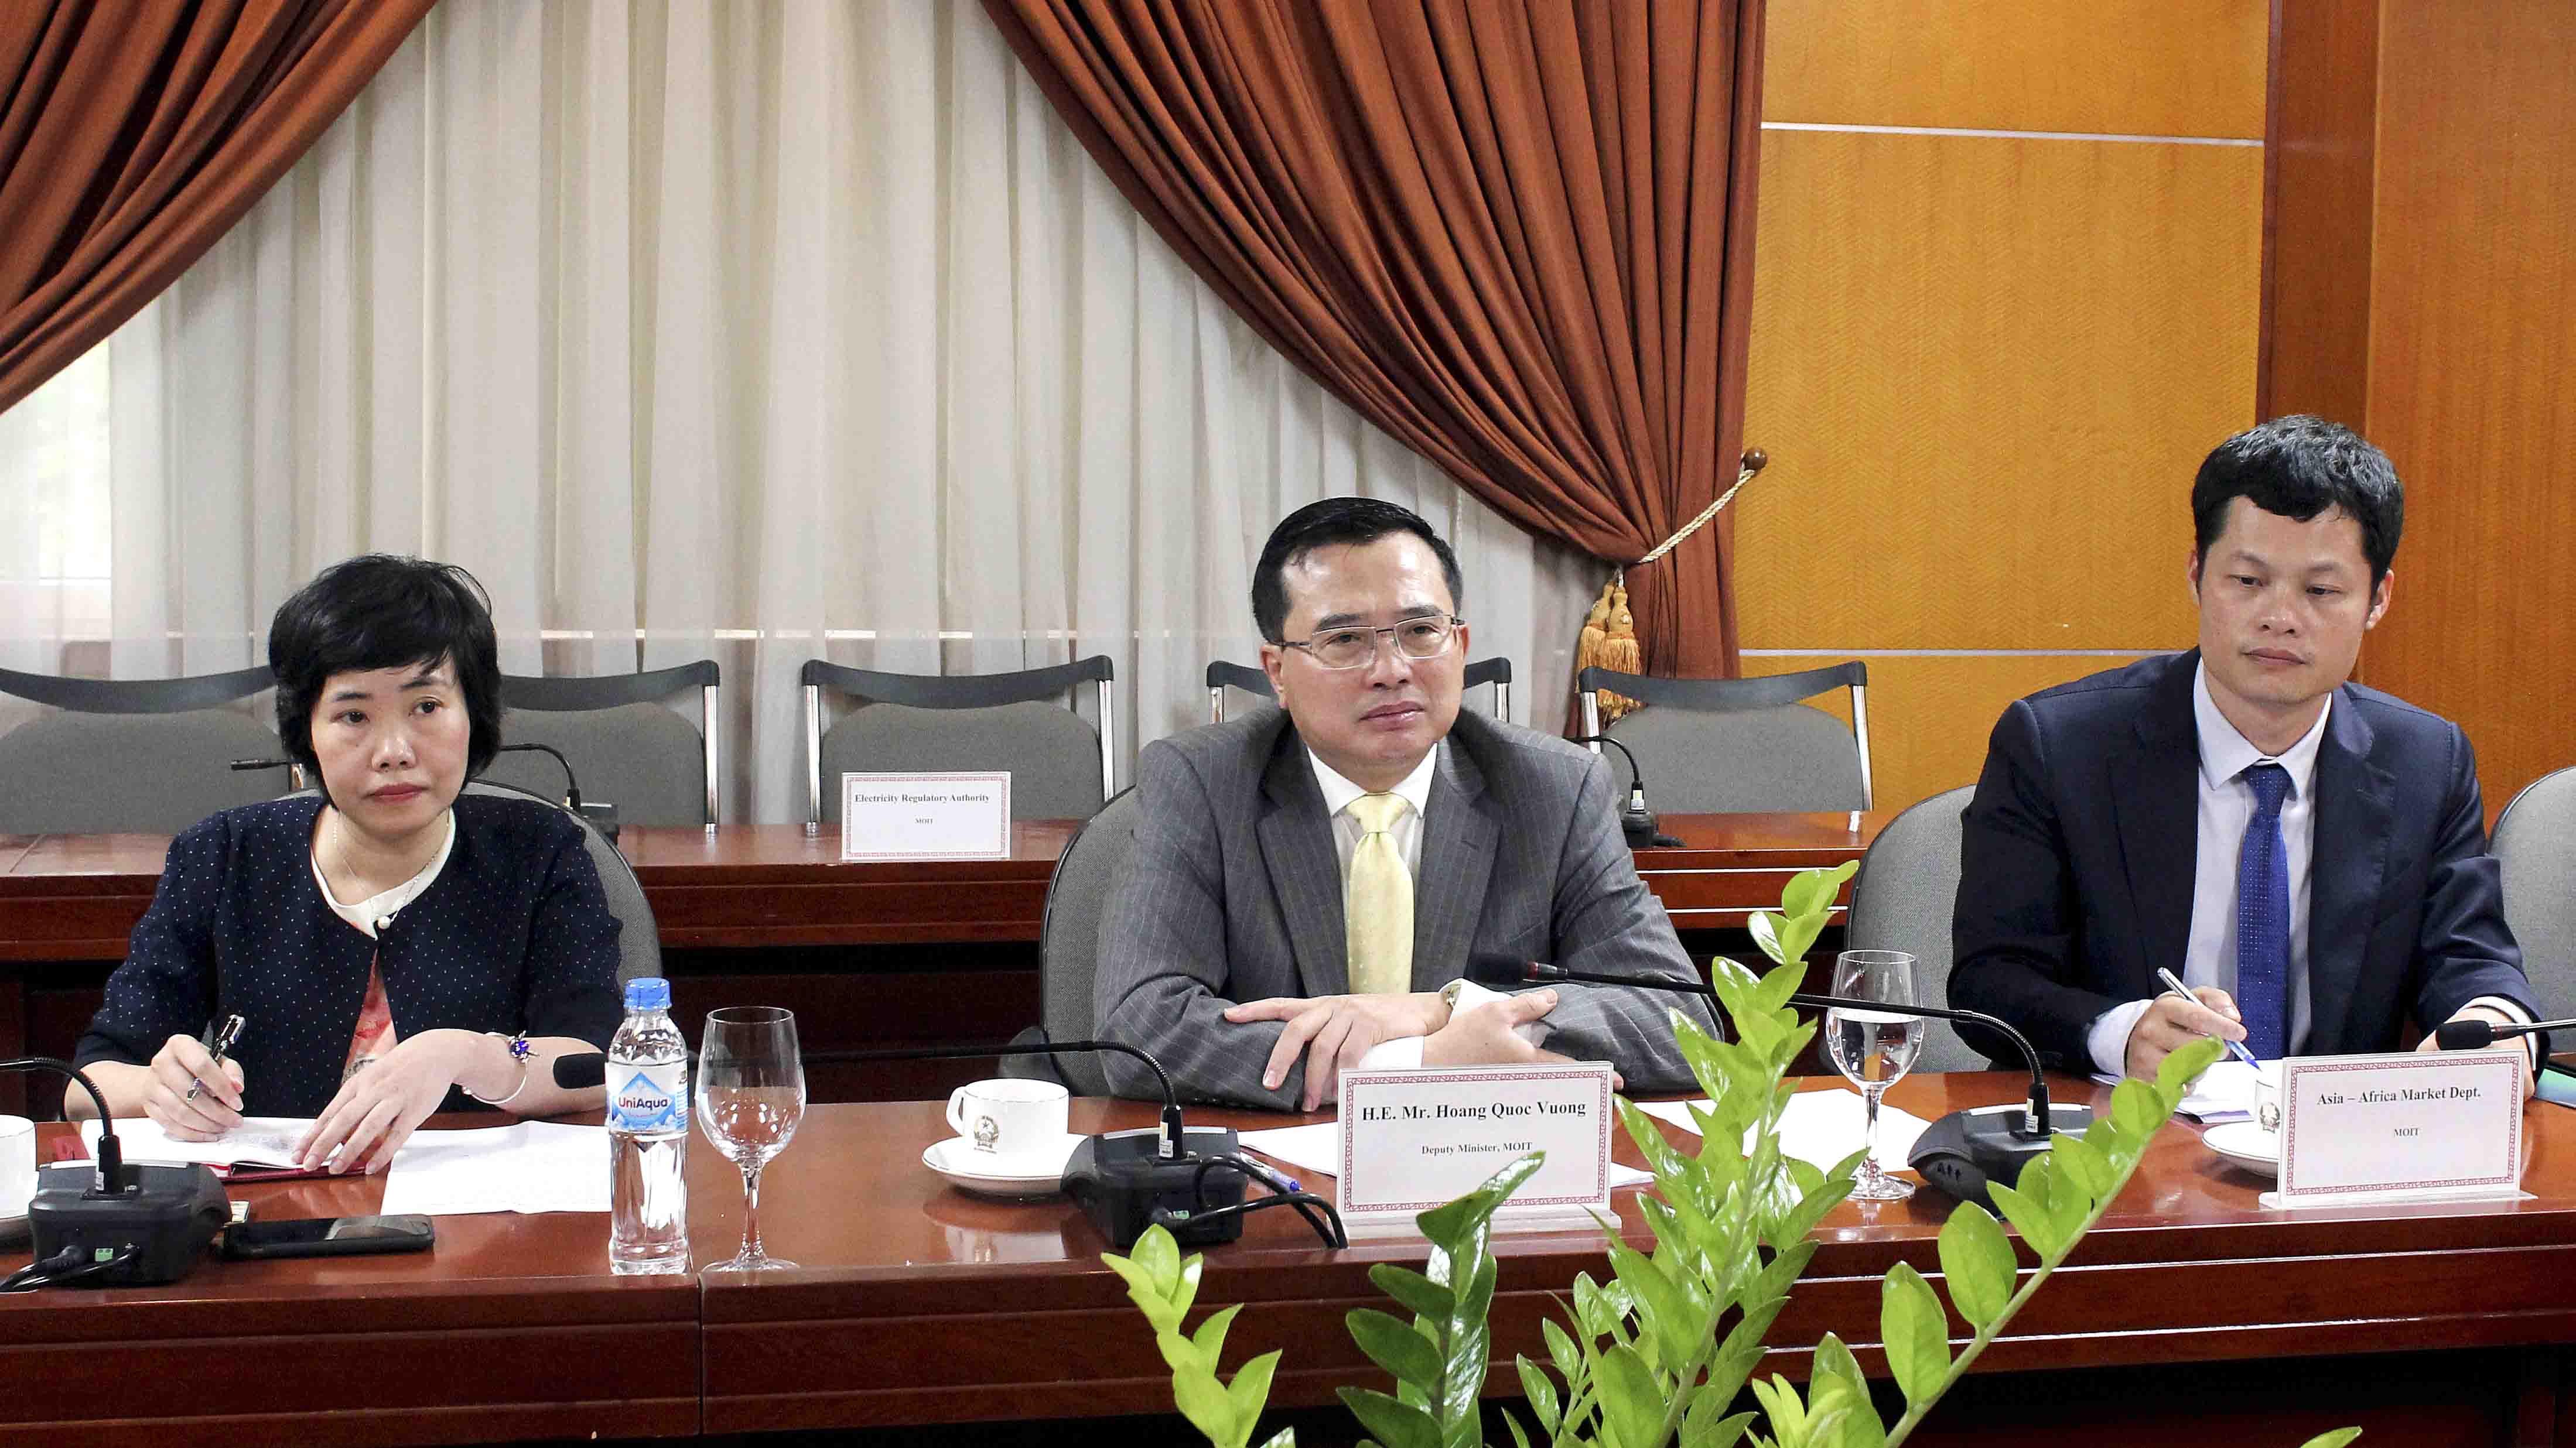 Thứ trưởng Bộ Công Thương Hoàng Quốc Vượng (ảnh giữa) làm việc với đại diện Công ty InfraCo Asia